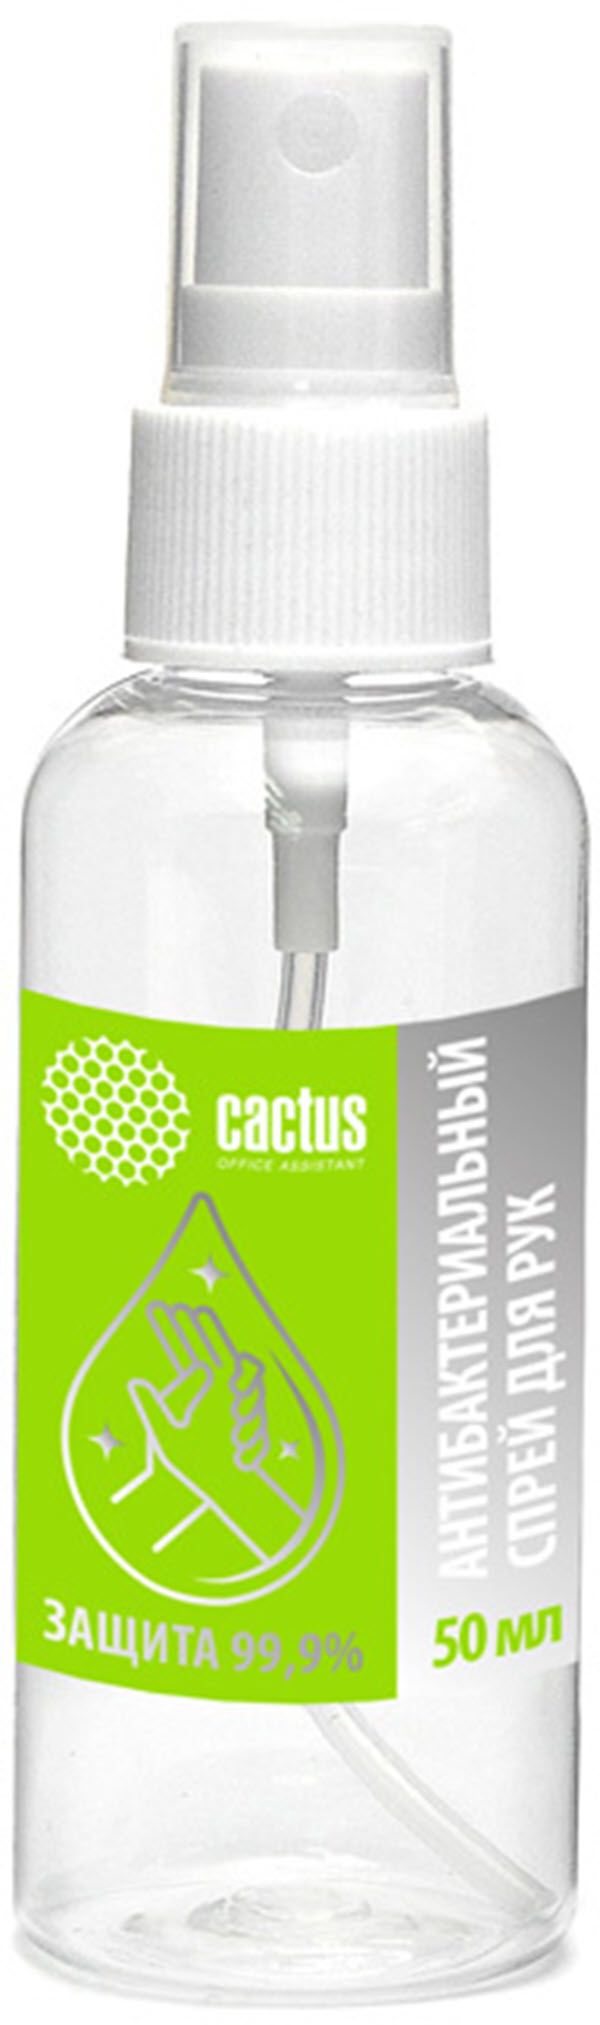 Антисептик для рук Cactus CS-Antiseptic жидкость 50мл